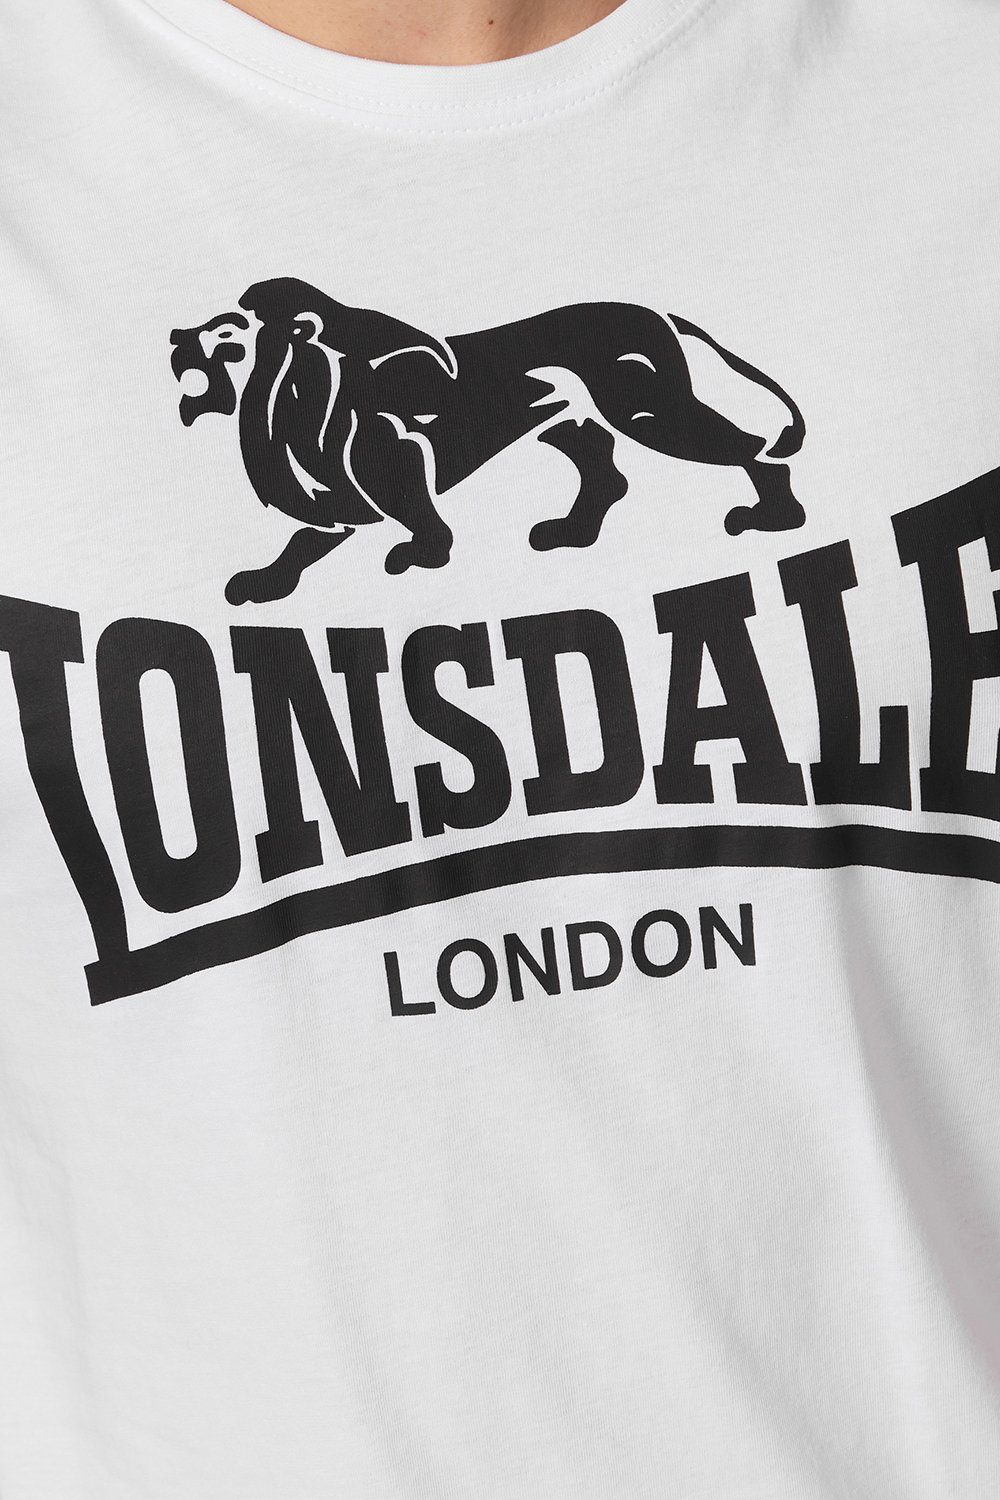 LOGO T-Shirt White Lonsdale